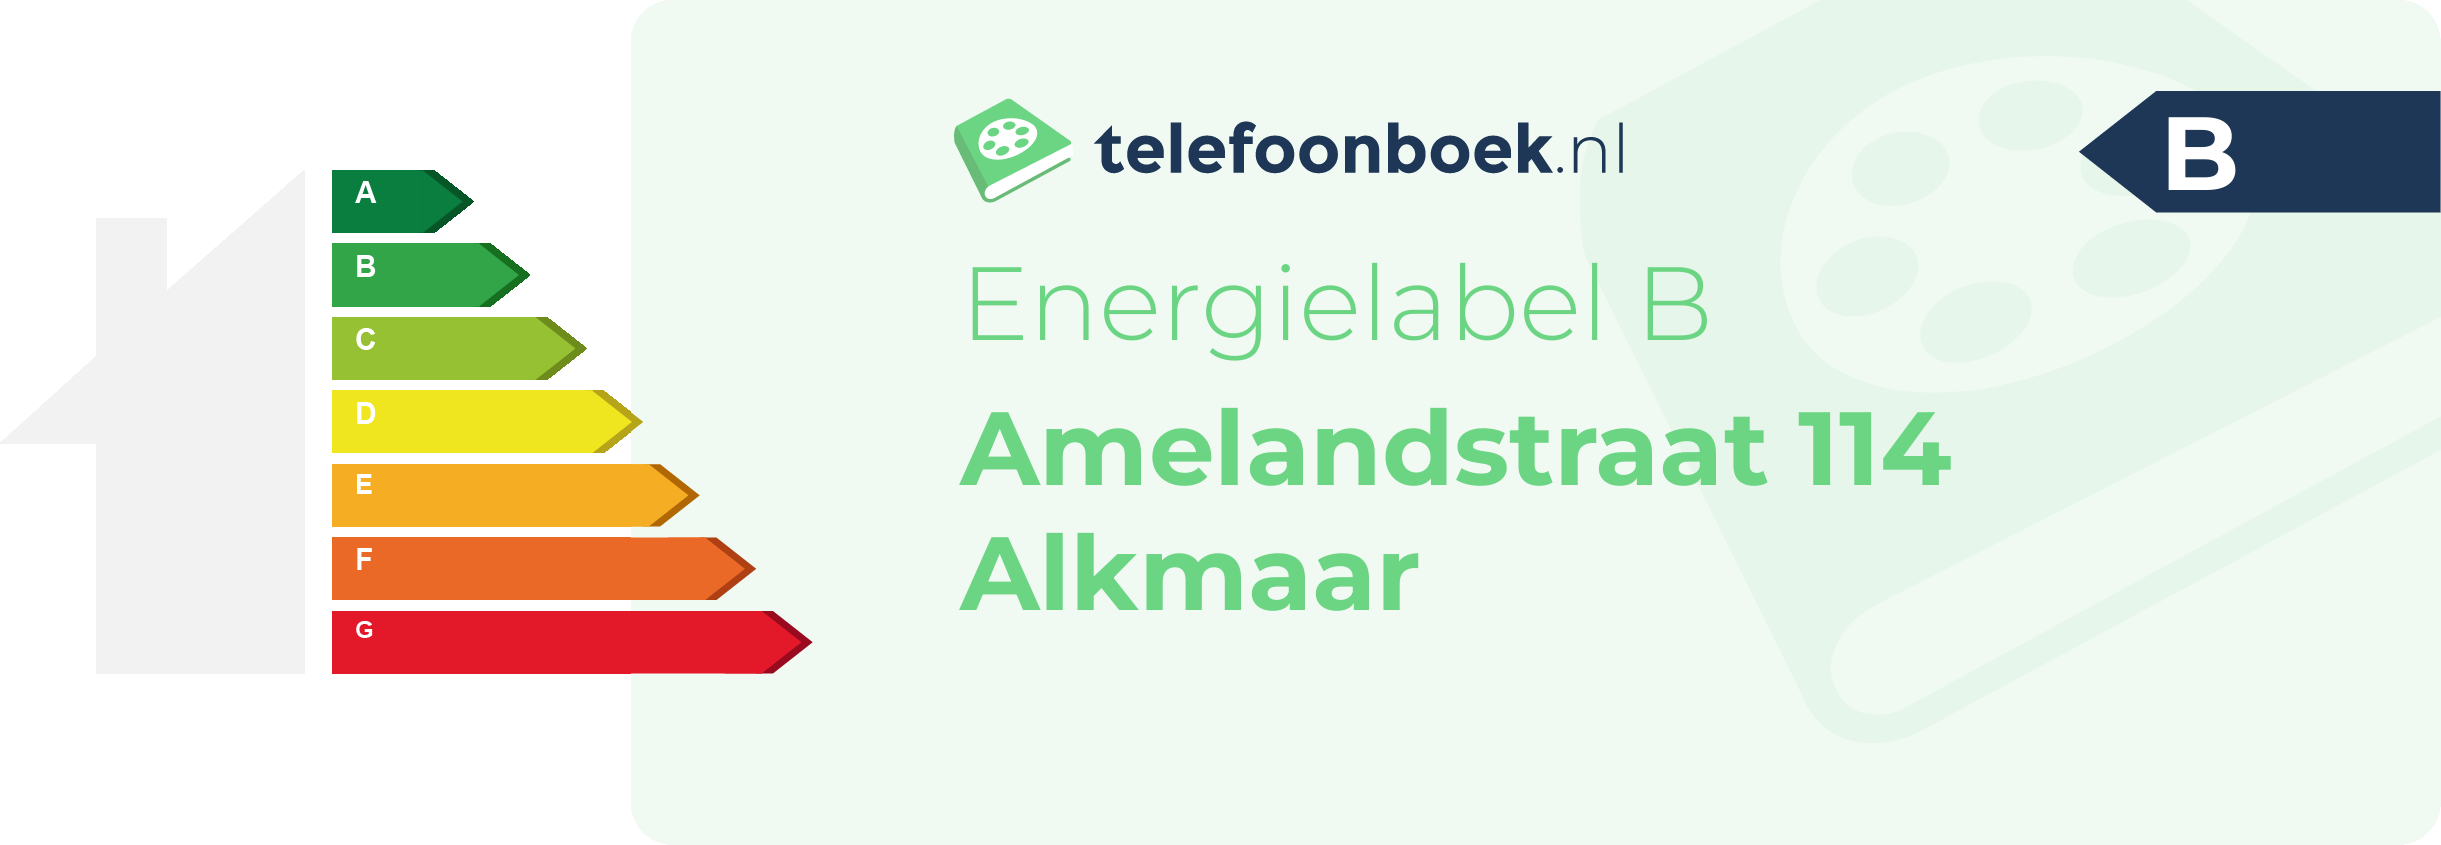 Energielabel Amelandstraat 114 Alkmaar